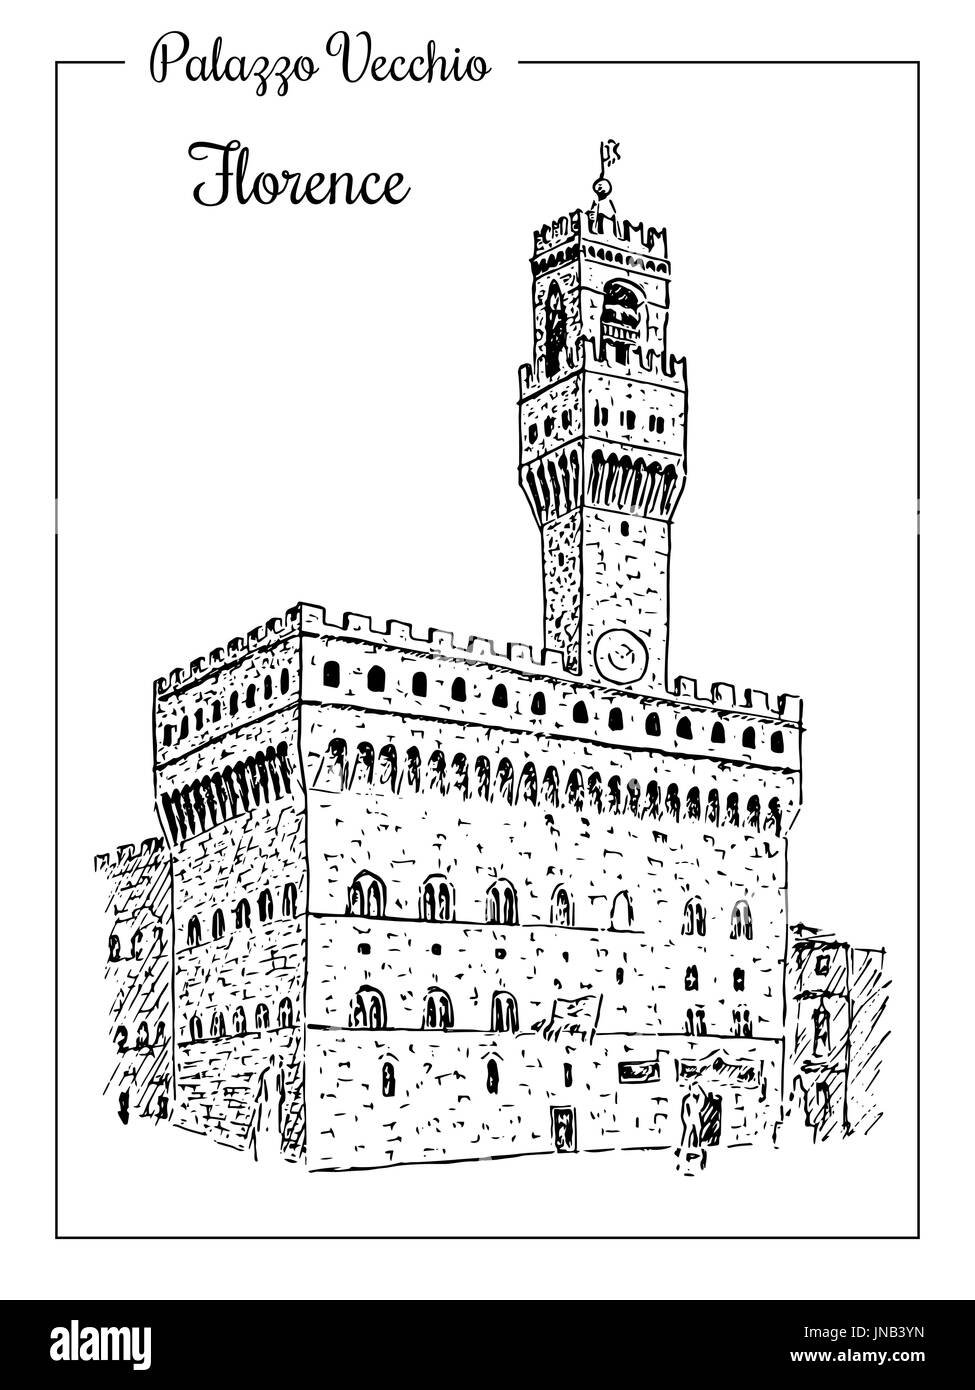 Palazzo Vecchio or Palazzo della Signoria in Florence, Italy. Stock Vector